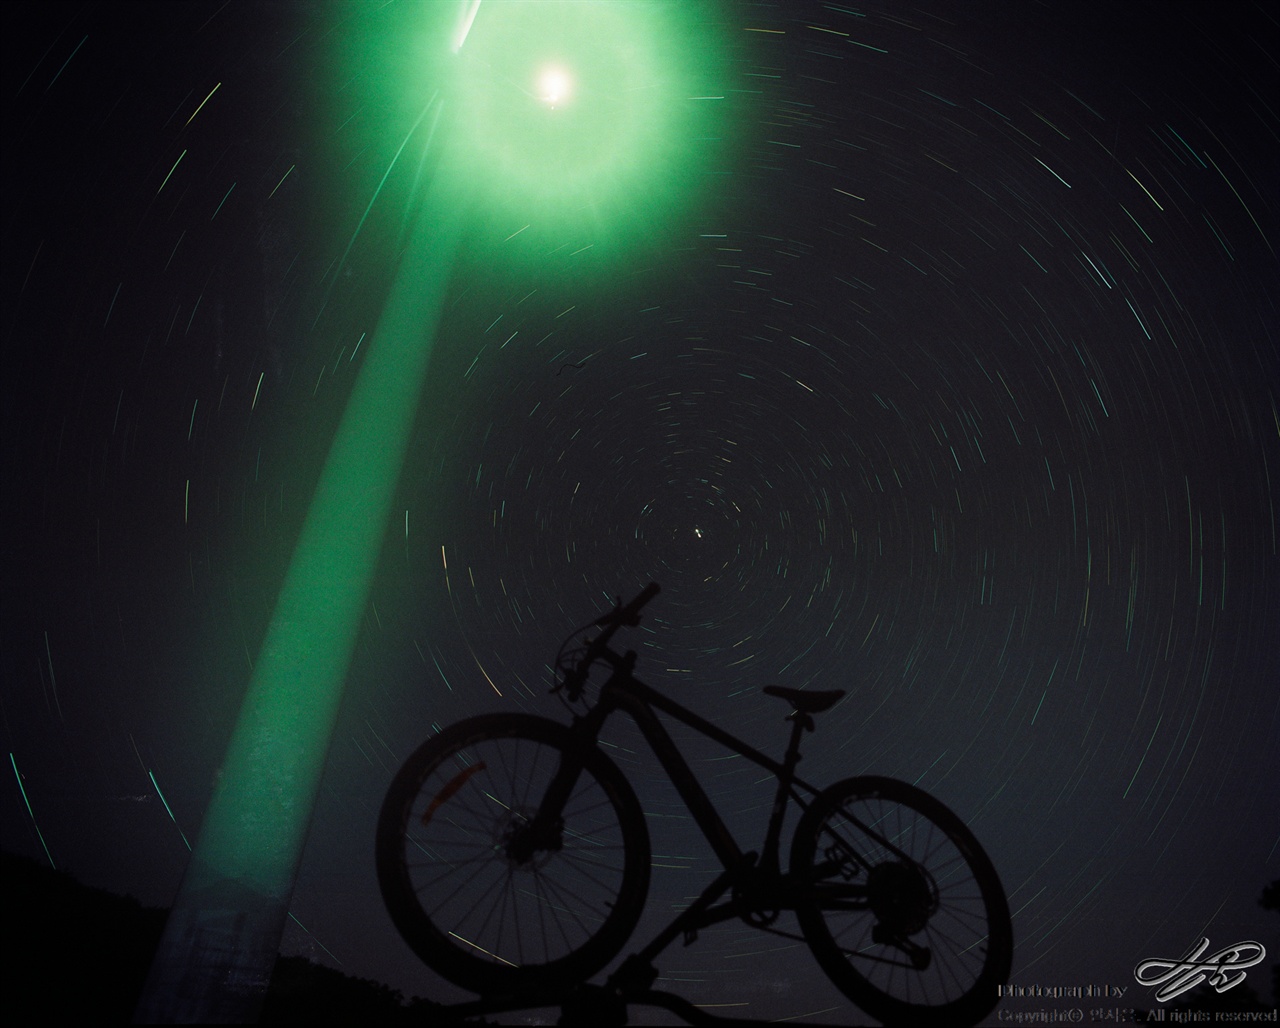 우주를 달리는 자전거 (6*7중형/Pro400H)차 위에 자전거를 올리고 풍력발전기의 조명을 배경 삼아 별 일주 사진을 담았다. 자전거 타는 여정이 많았던 이번 여행을 상징하고자 꾸며본 구성.